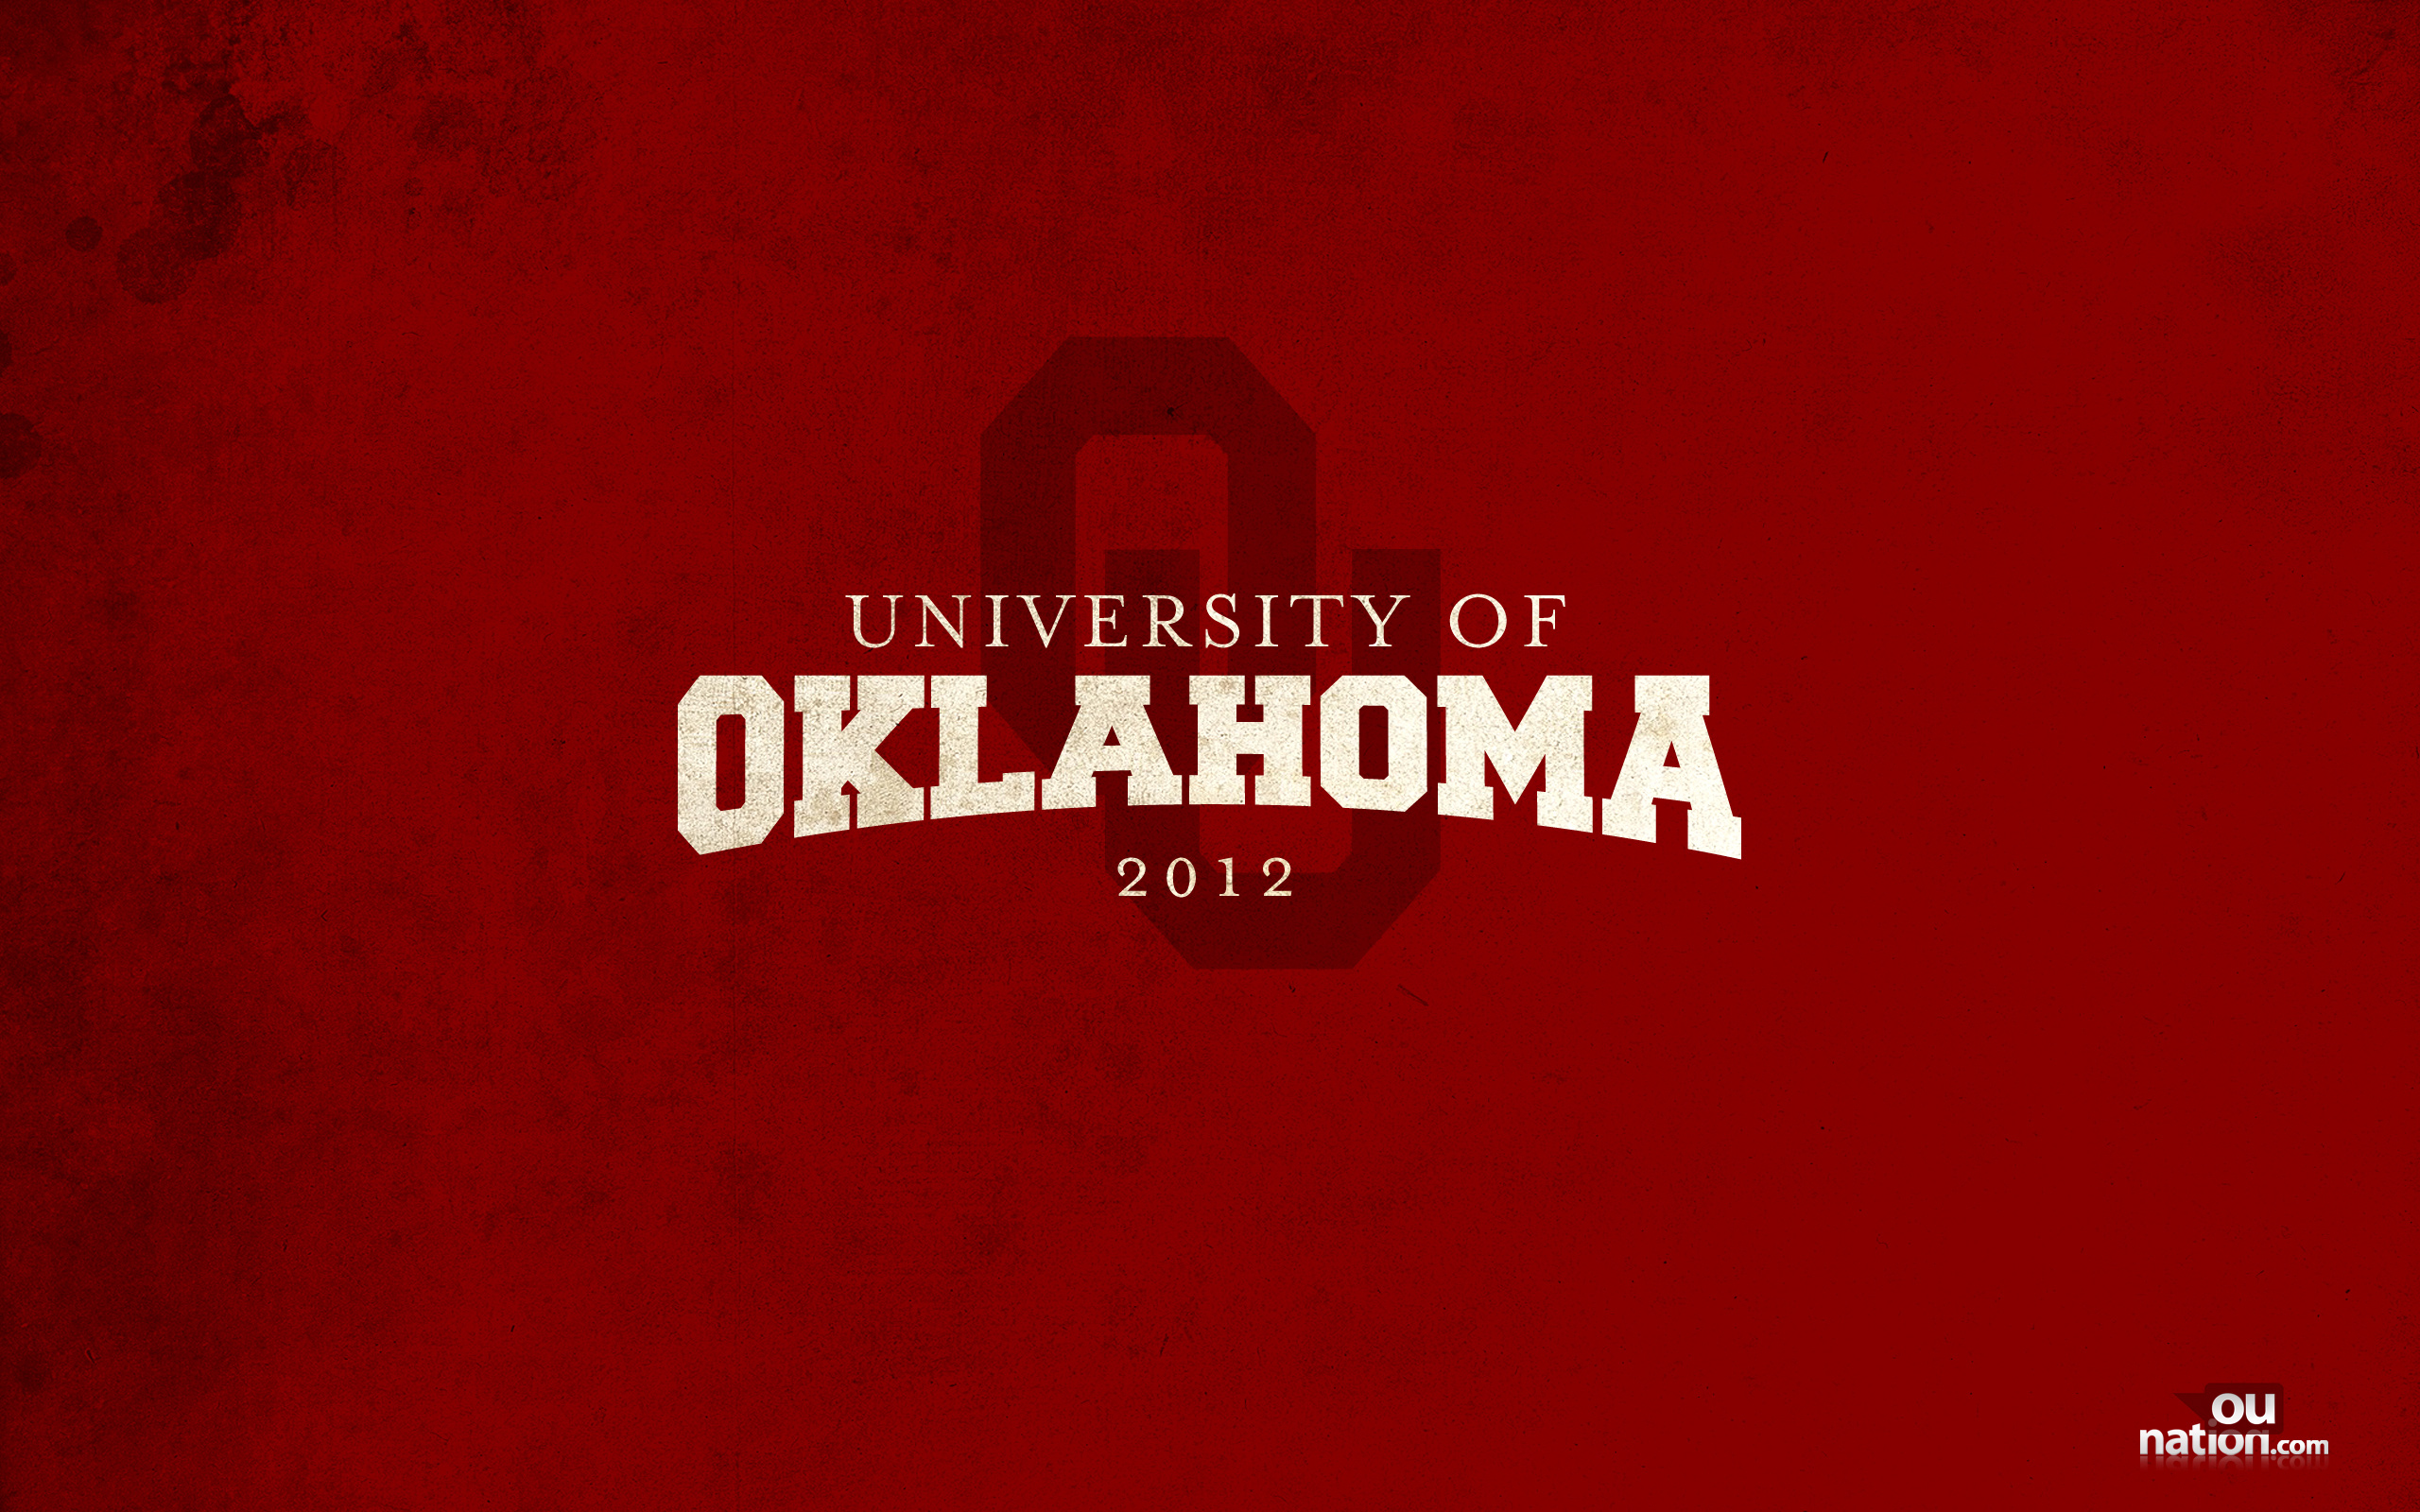 University Of Oklahoma Themed Wallpaper For